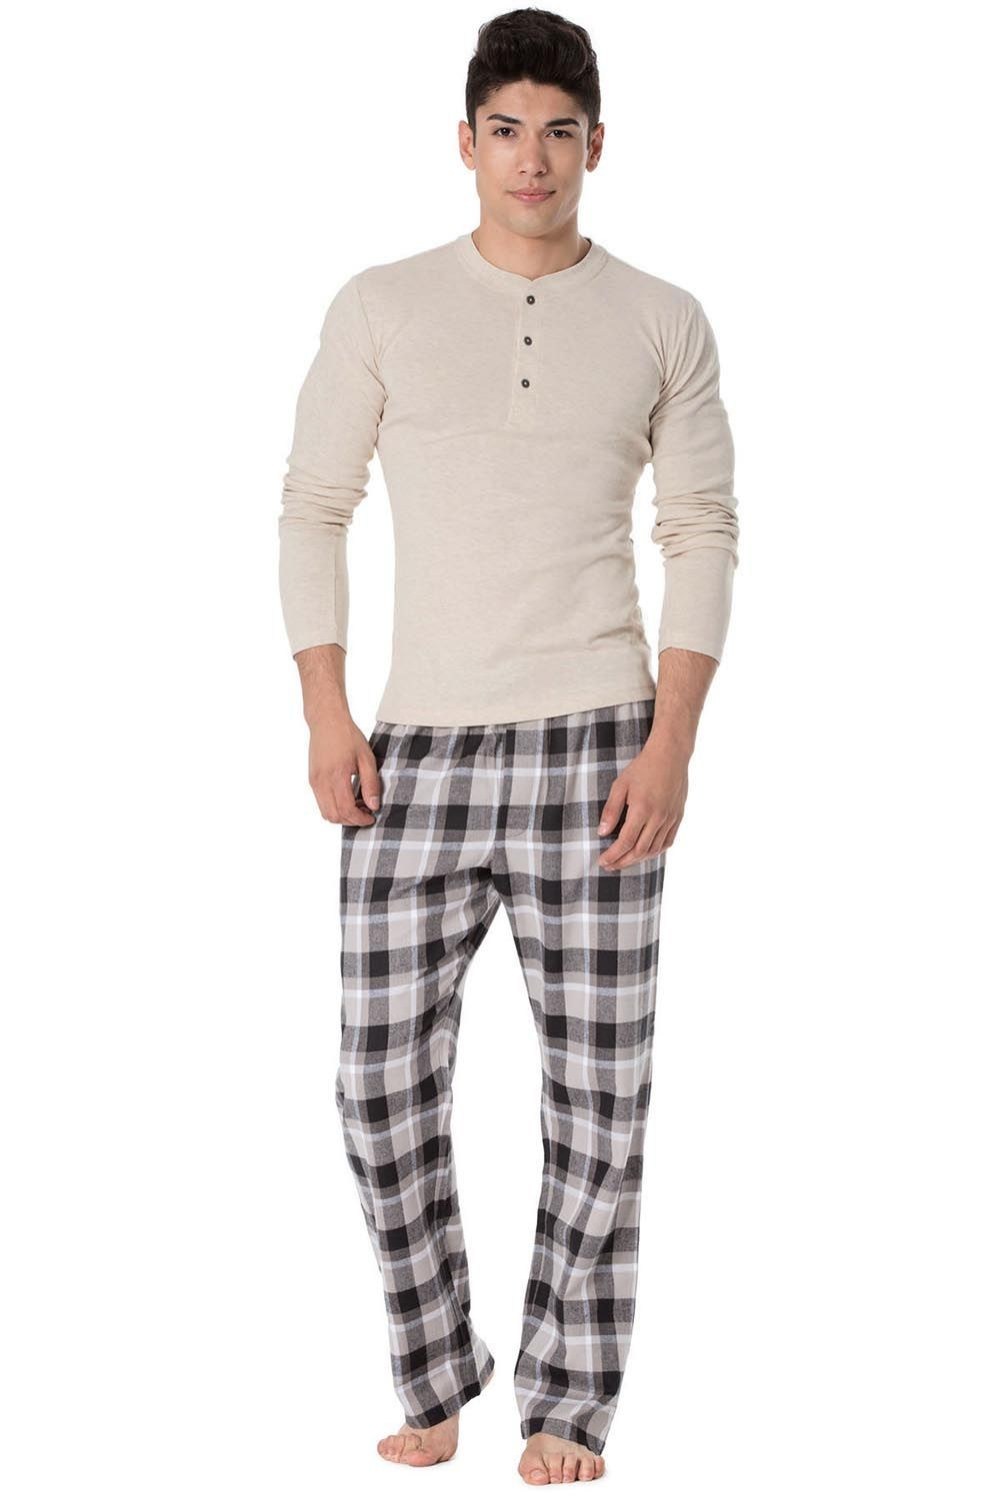 Rossli SAM-PY 093 piżama